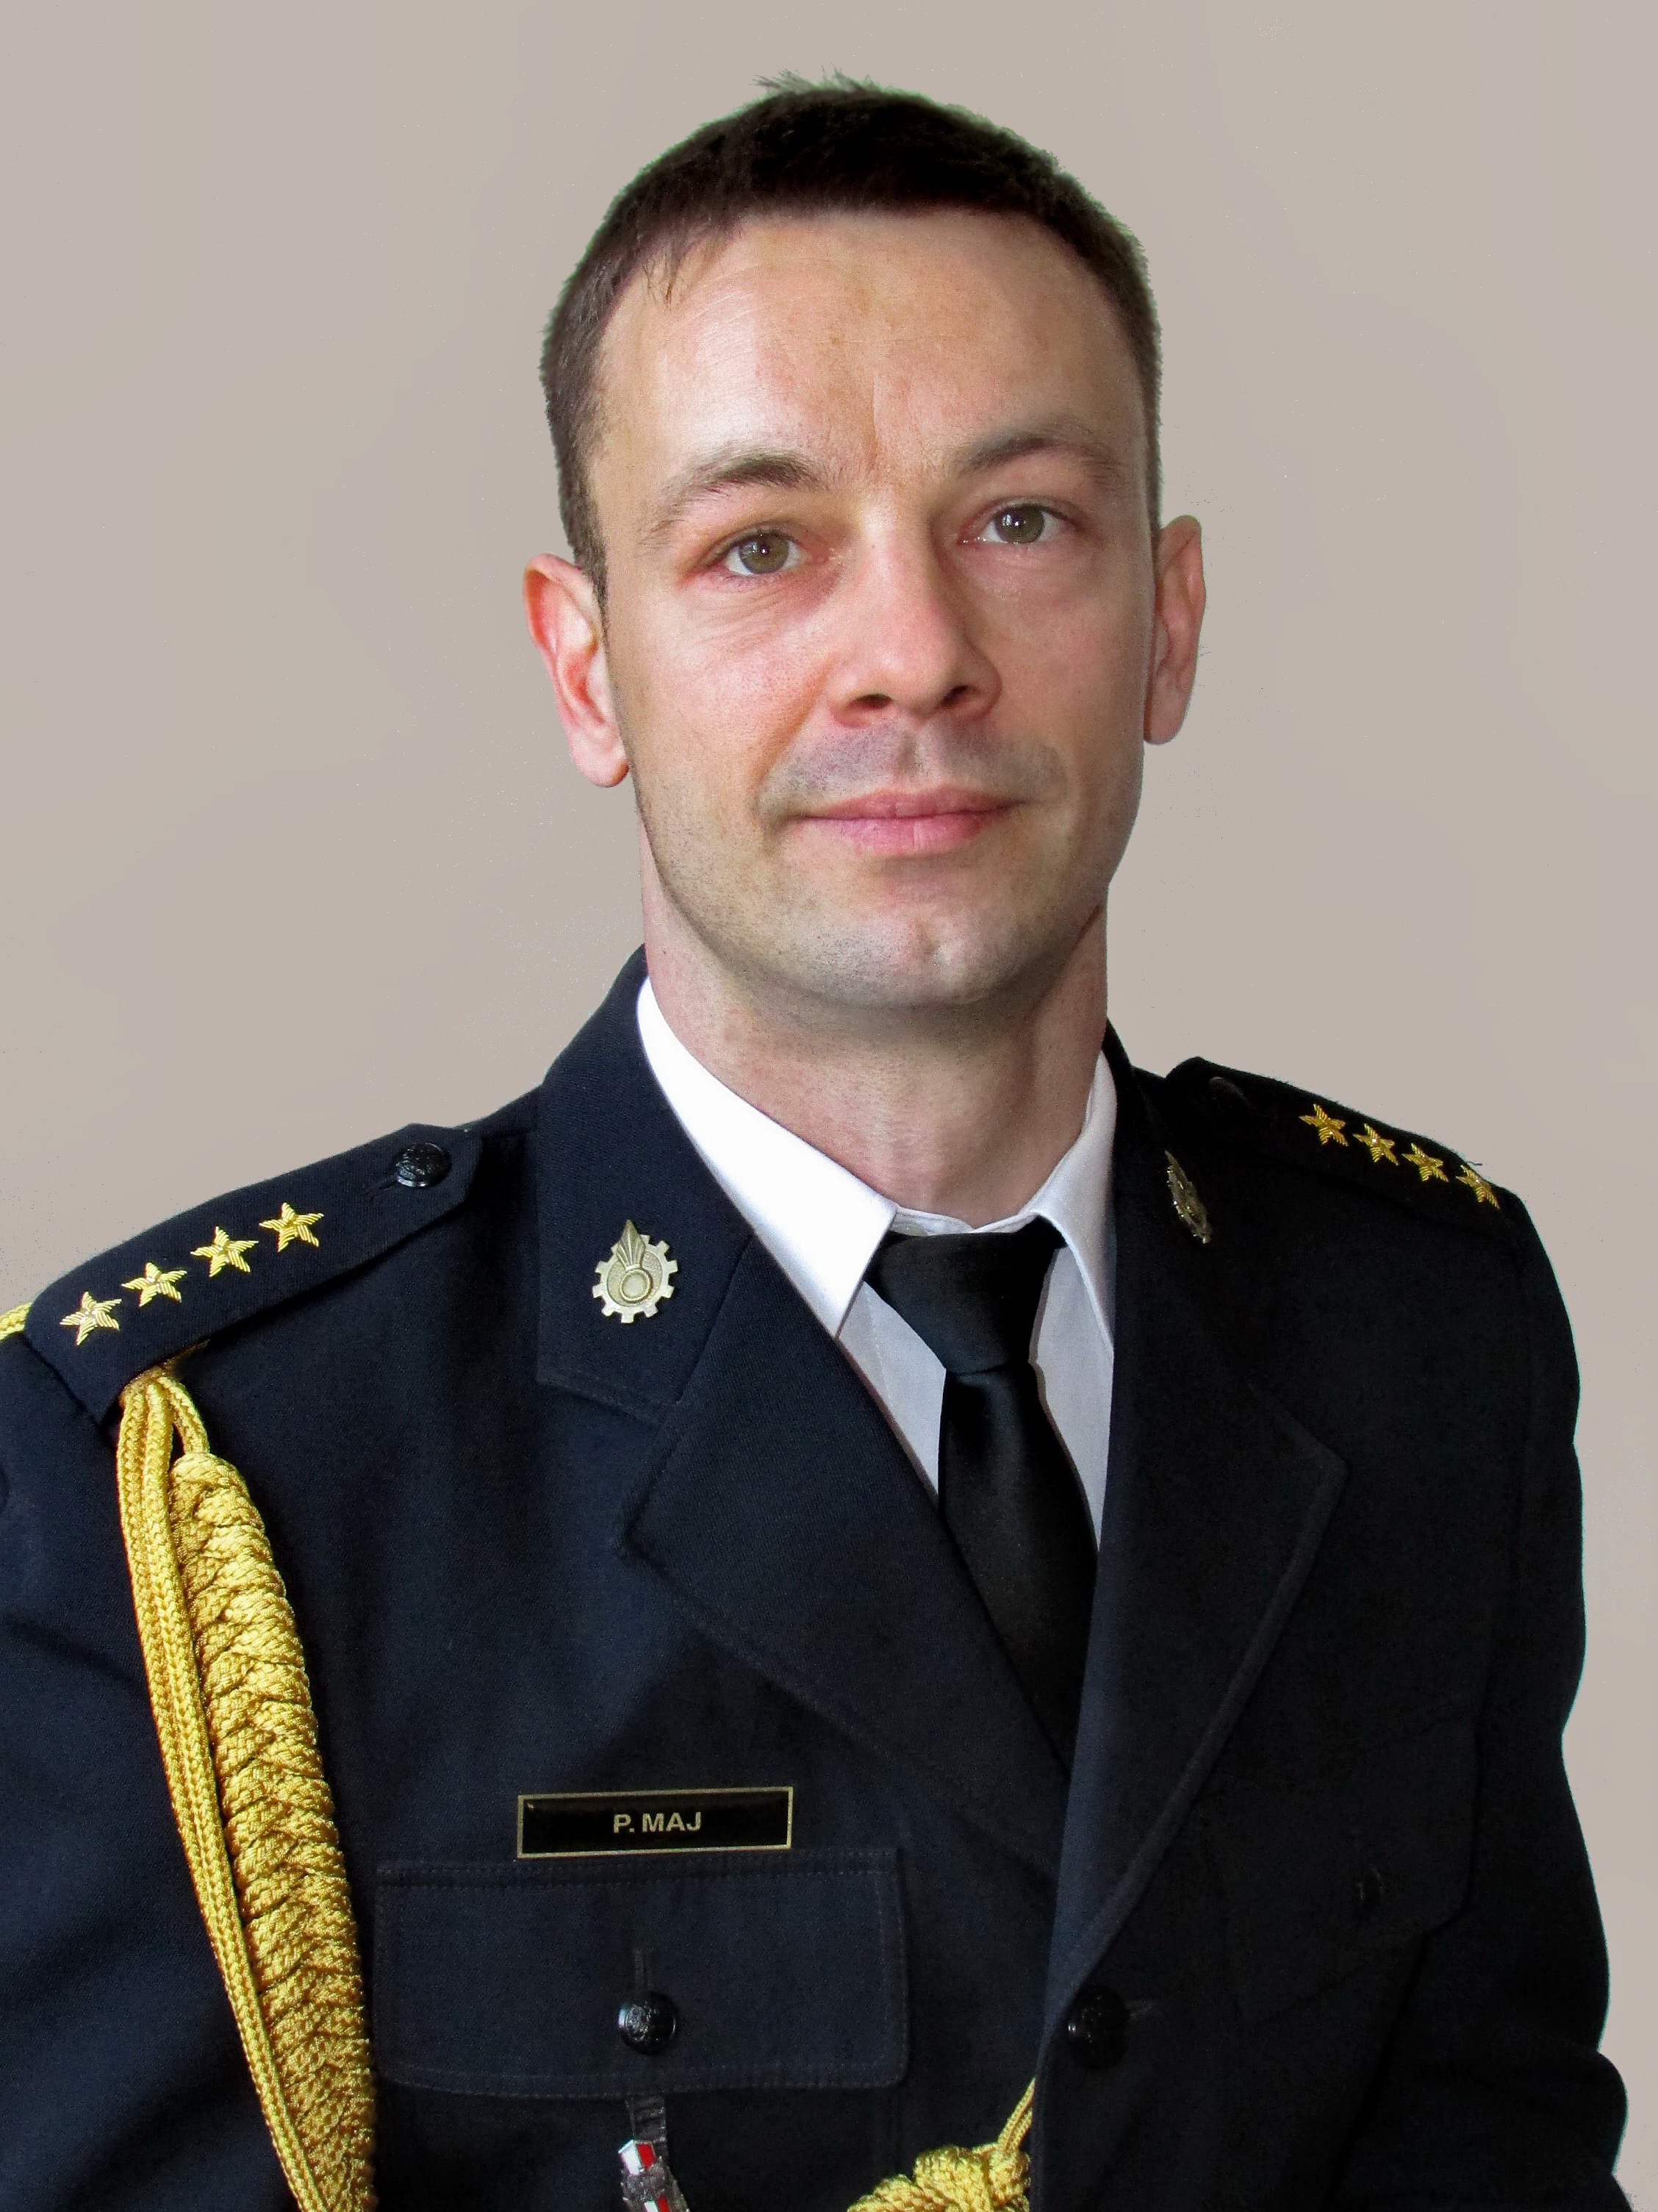 st. kpt. Paweł Maj